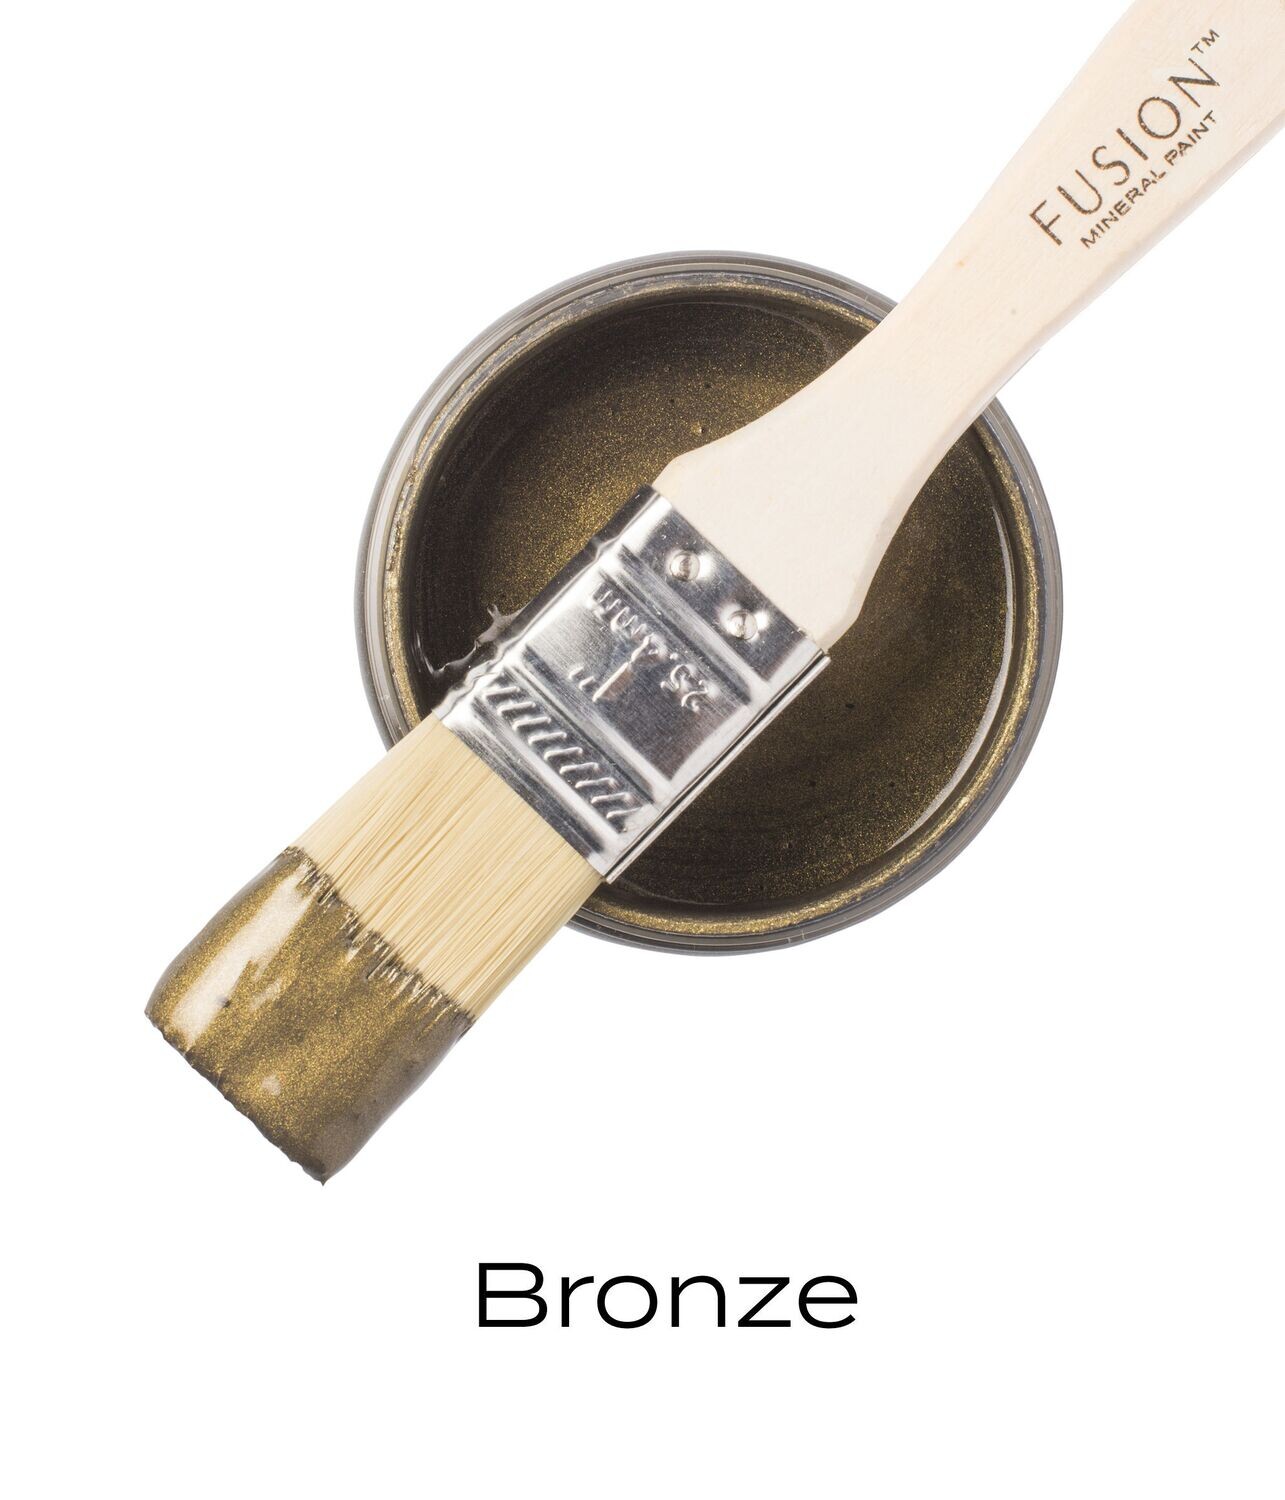 Metallic Bronze, name: Large